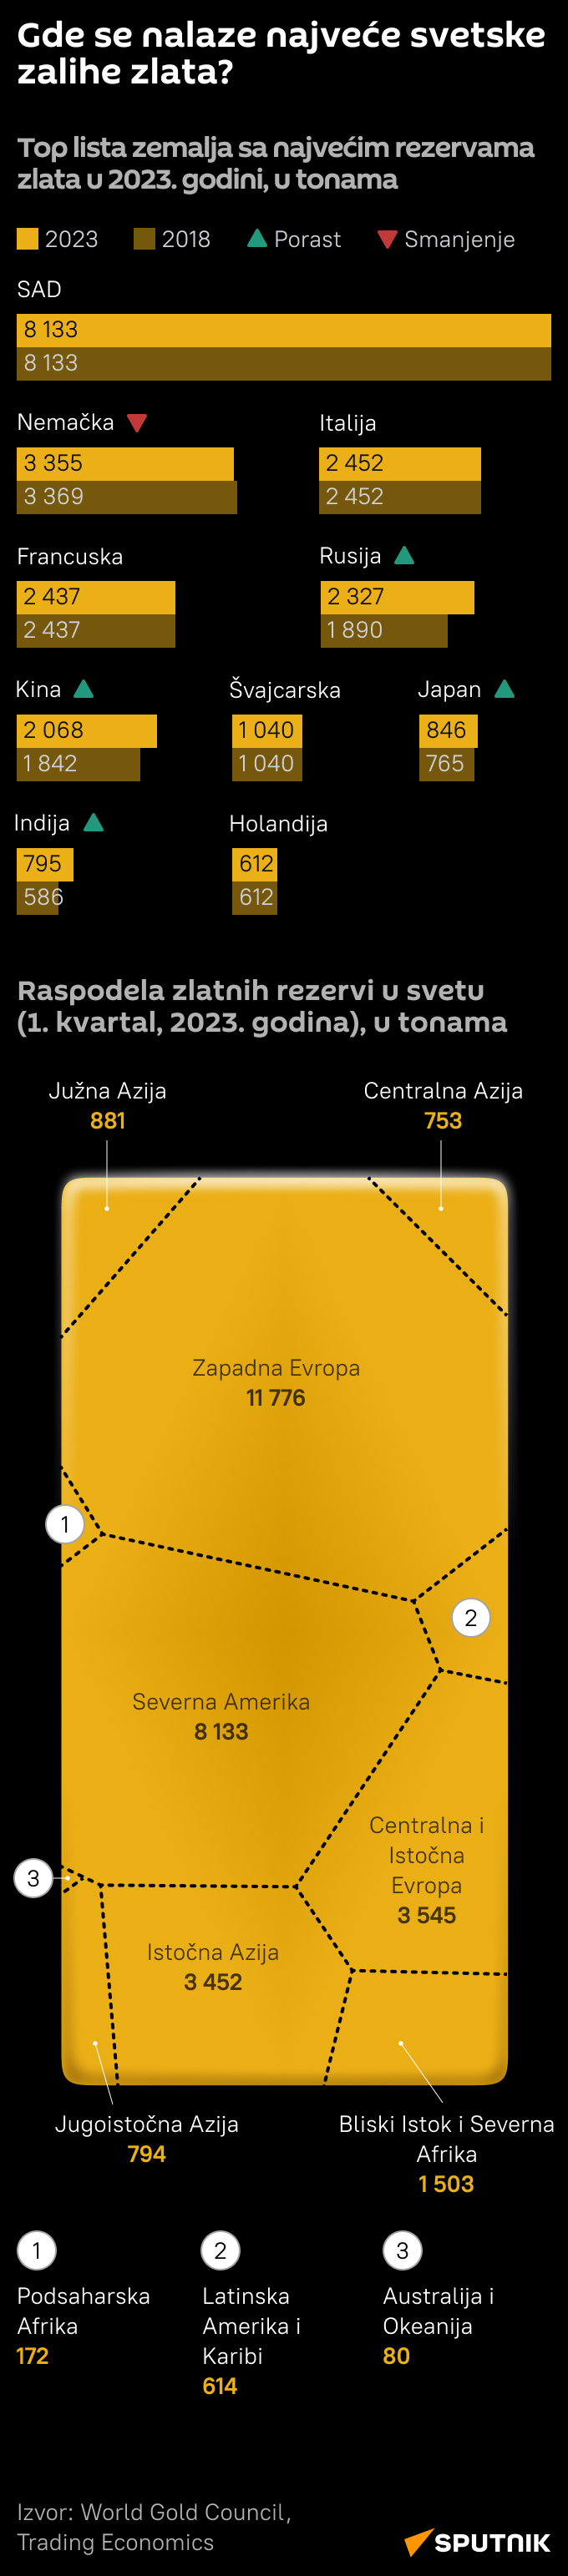 Infografika Najveće svetske zalihe zlata Latinica mob - Sputnik Srbija